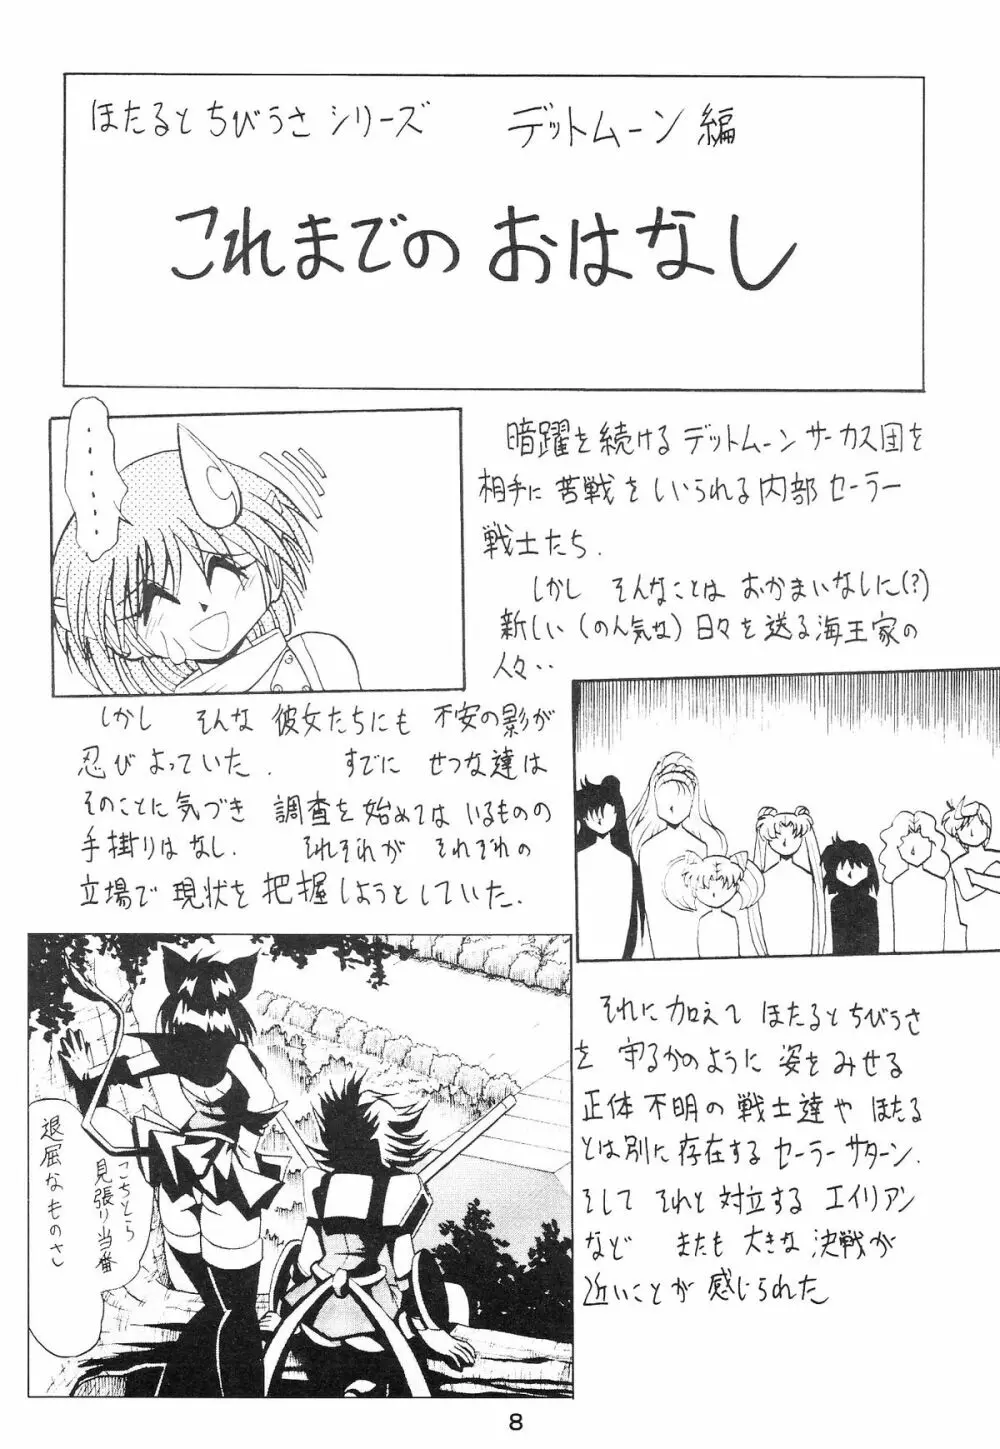 サイレント・サターン SS vol.6 - page8